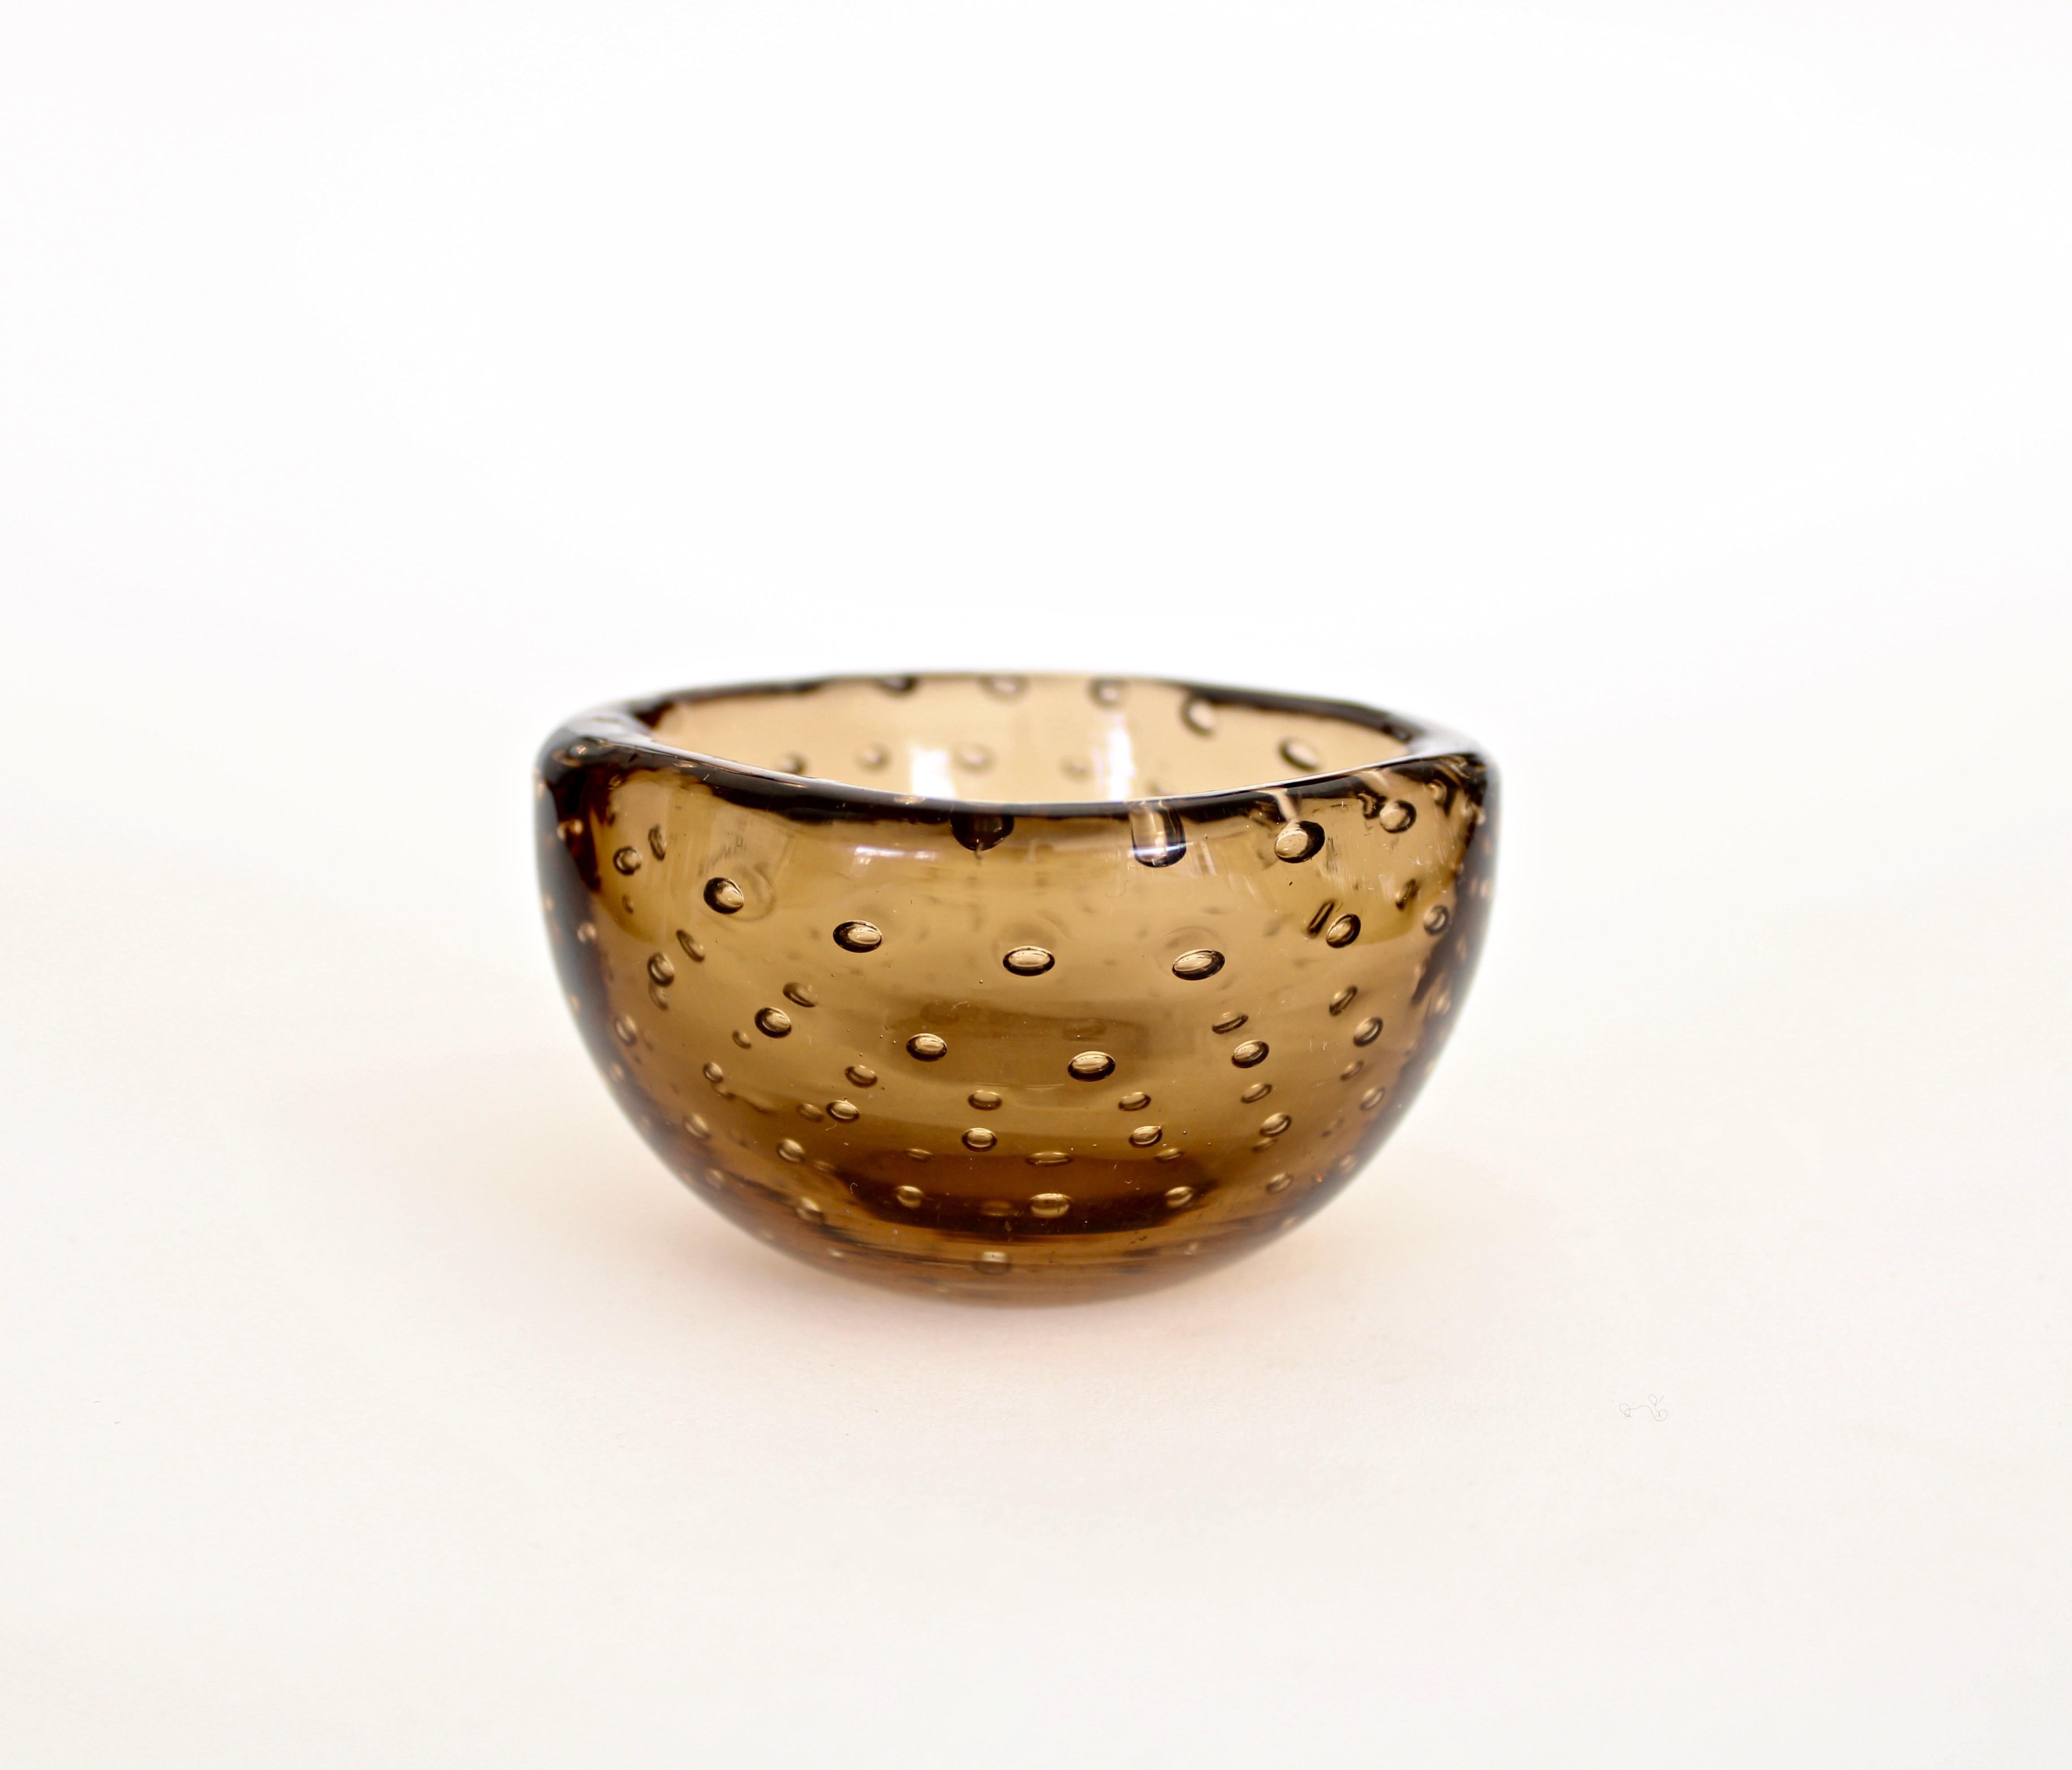 Small delicate amber brown Bullicante bowl designed by Carlo Scapra for Venini. 
The Venini glass works was started in 1921 by Paolo Venini, Giacomo Cappellin, and Andrea Rioda. The company was named Vetri Soffiati Muranesi Venini Cappellin & C in